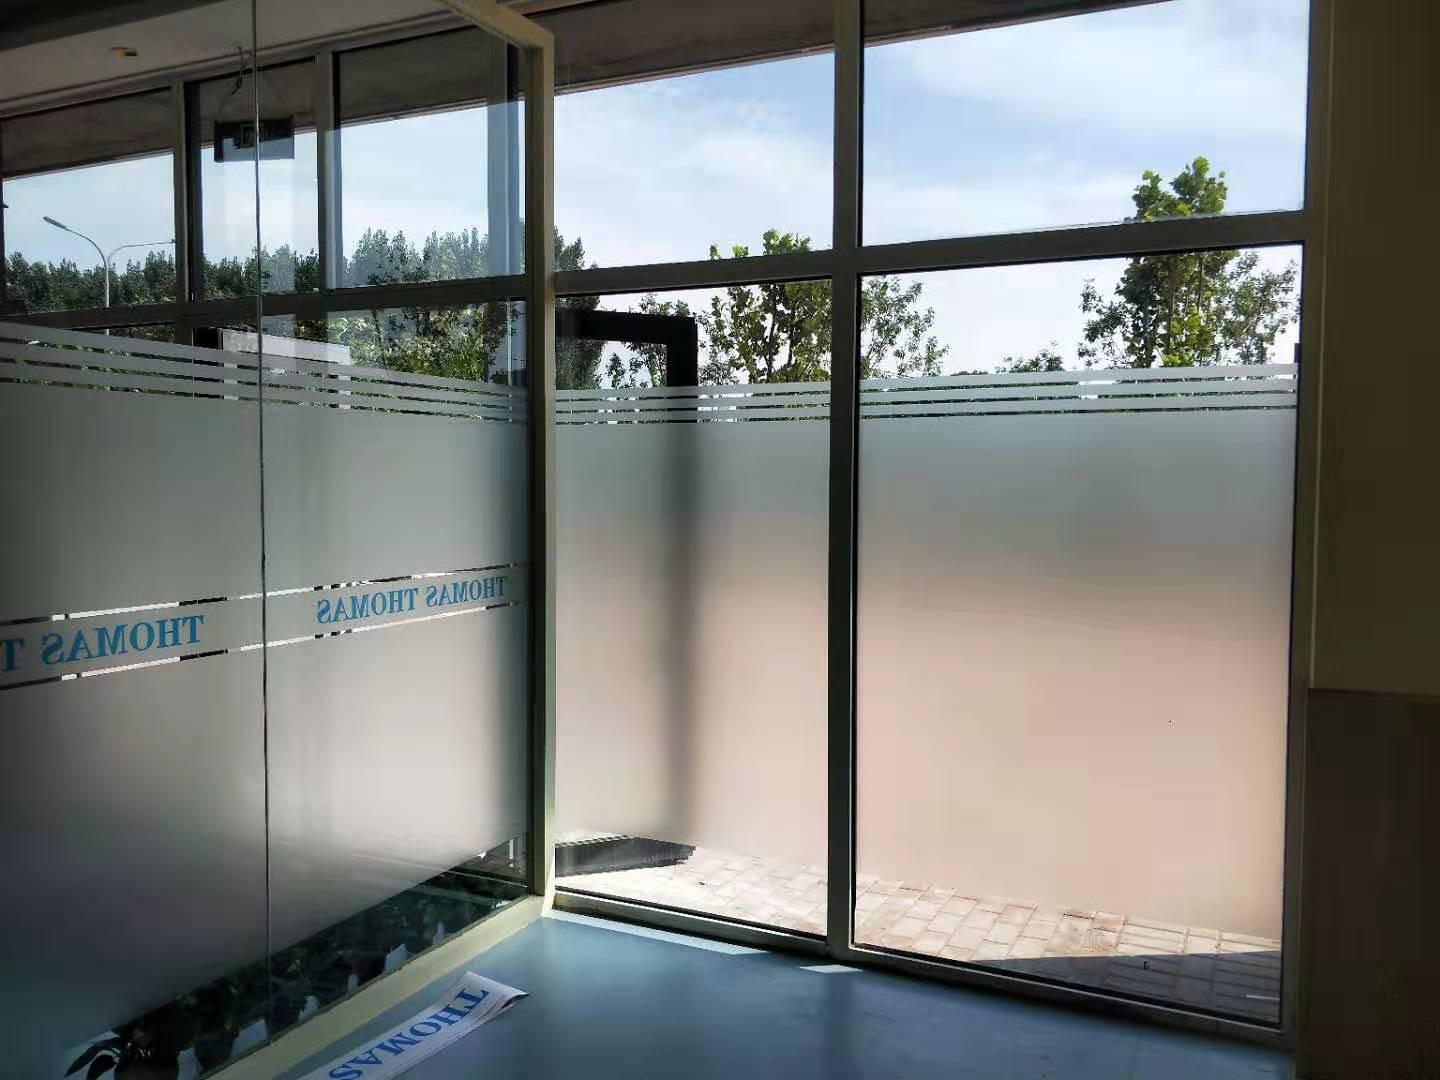 济南家庭玻璃贴膜阳光房贴膜玻璃隔热膜贴膜公司